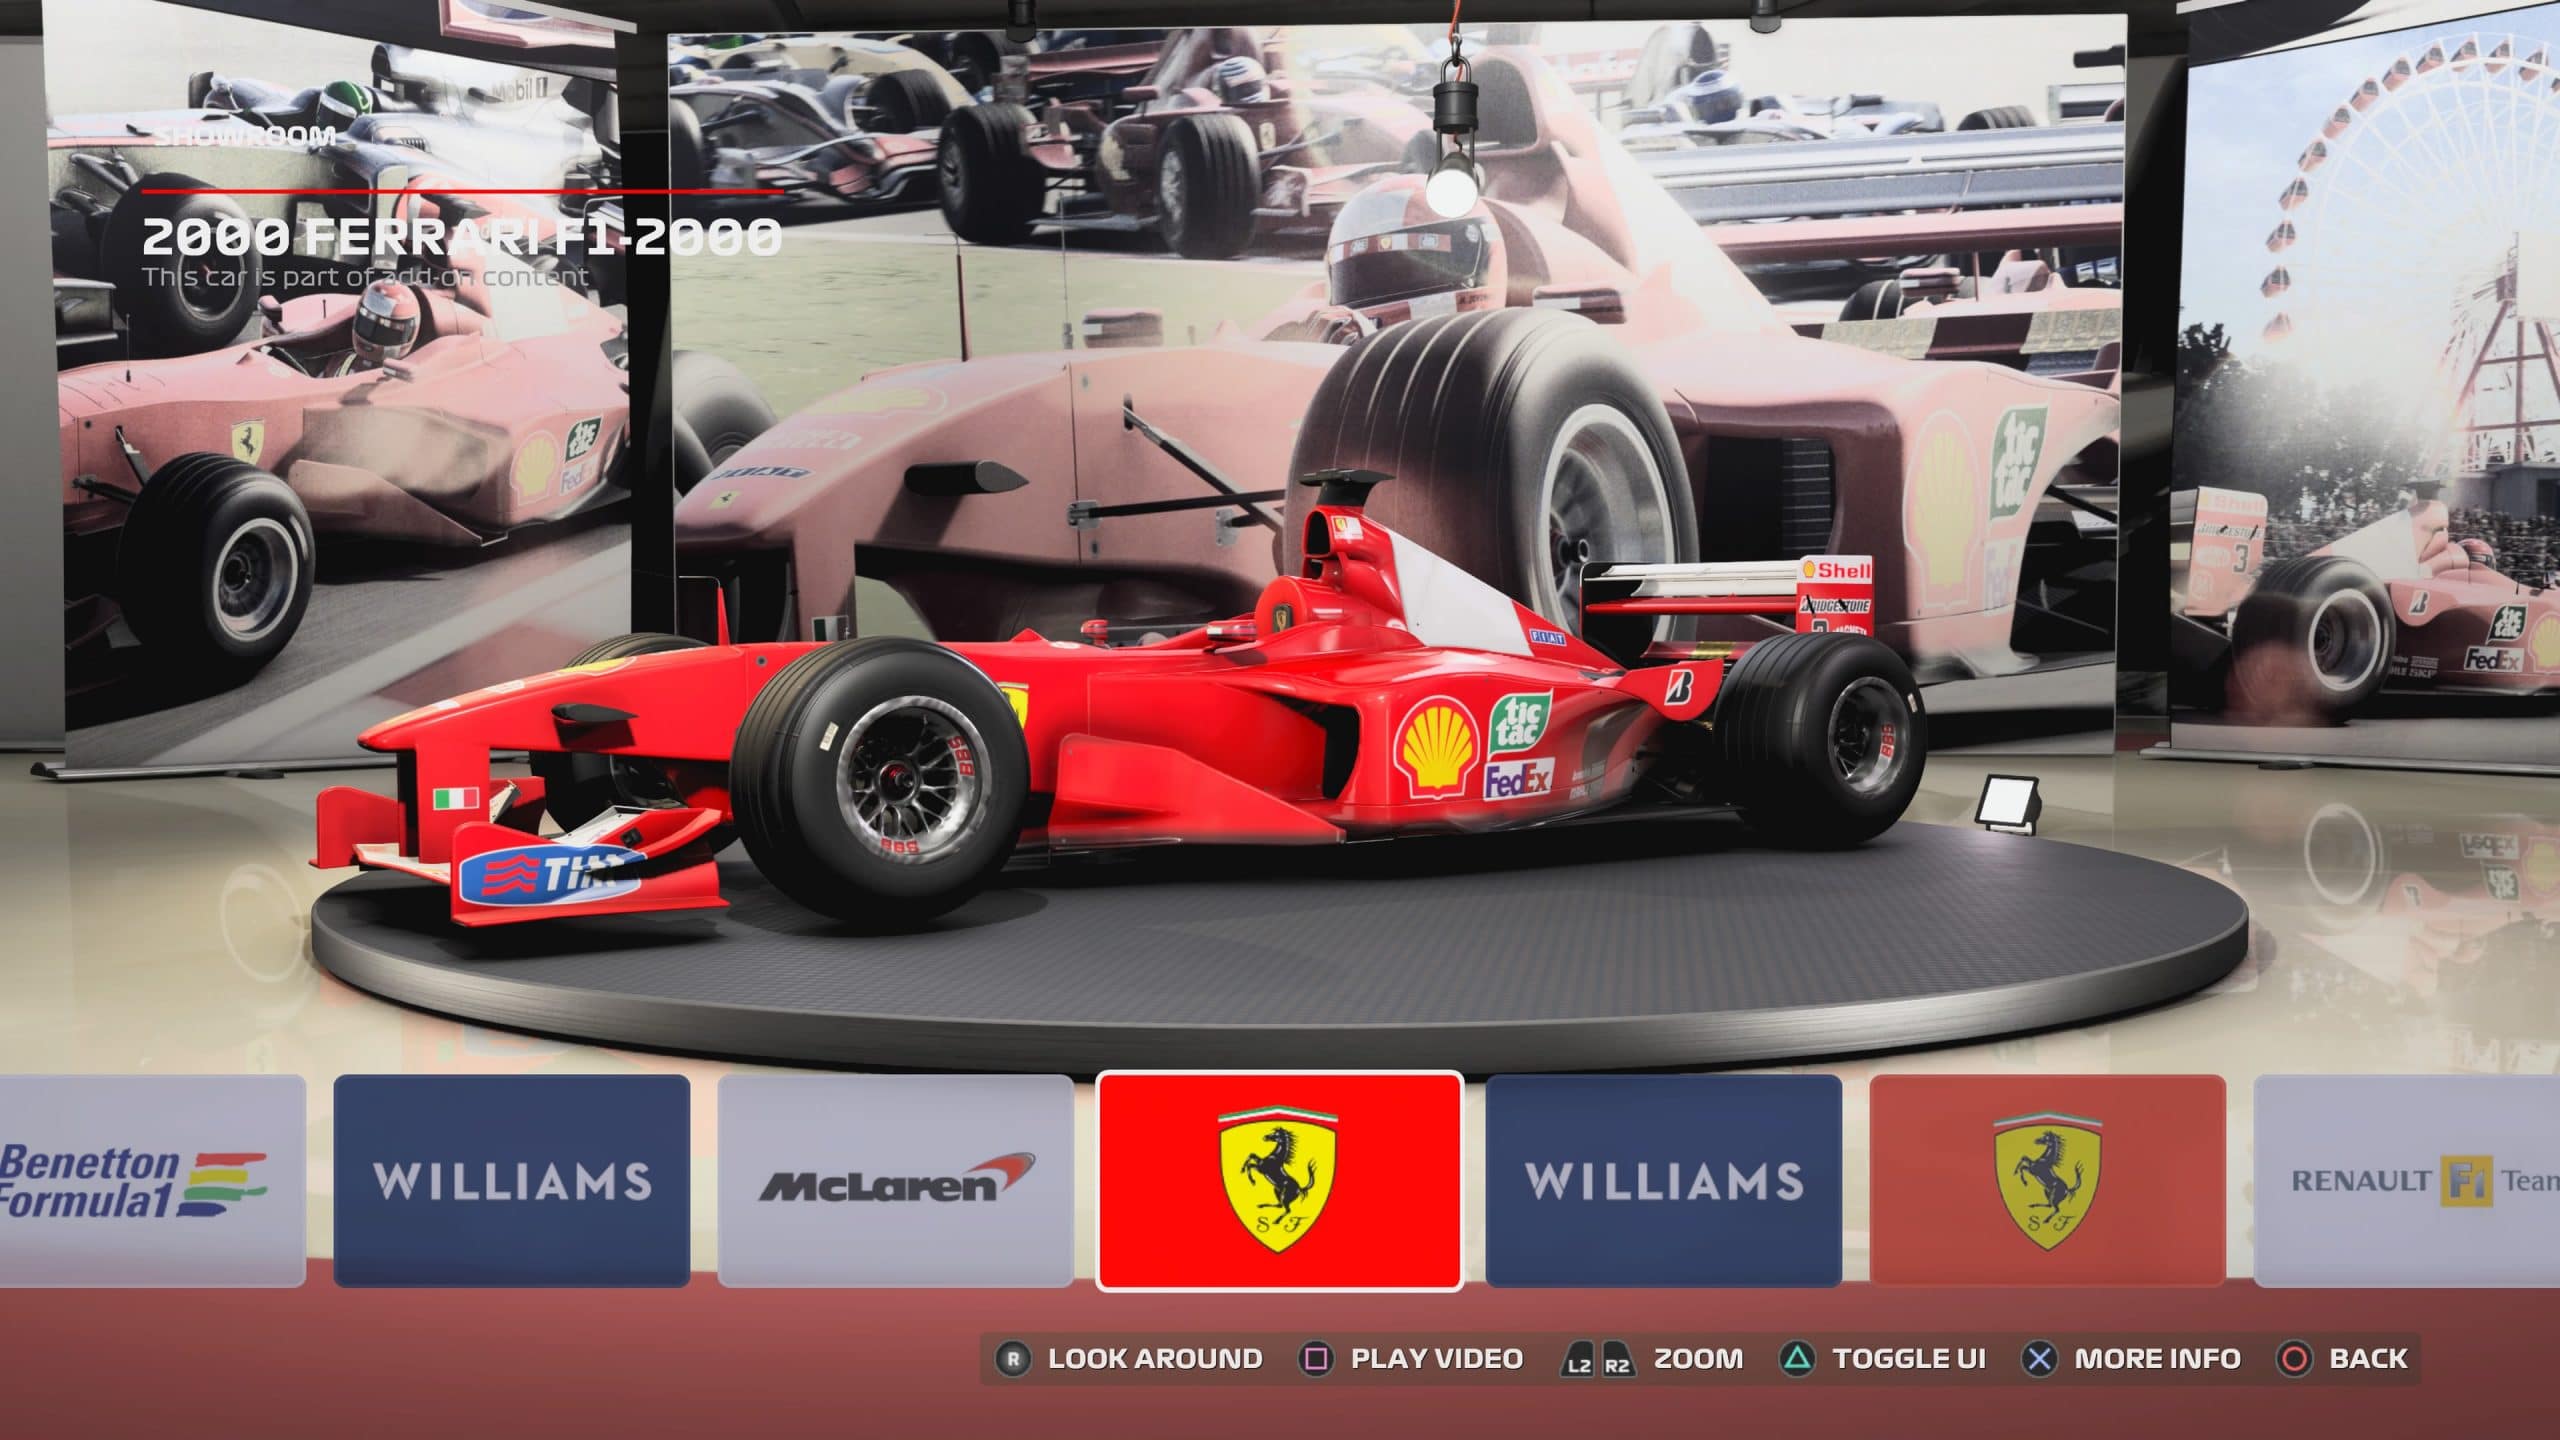 Carros históricos de Schumacher estão no game (Foto: Reprodução/Thiago Barros)